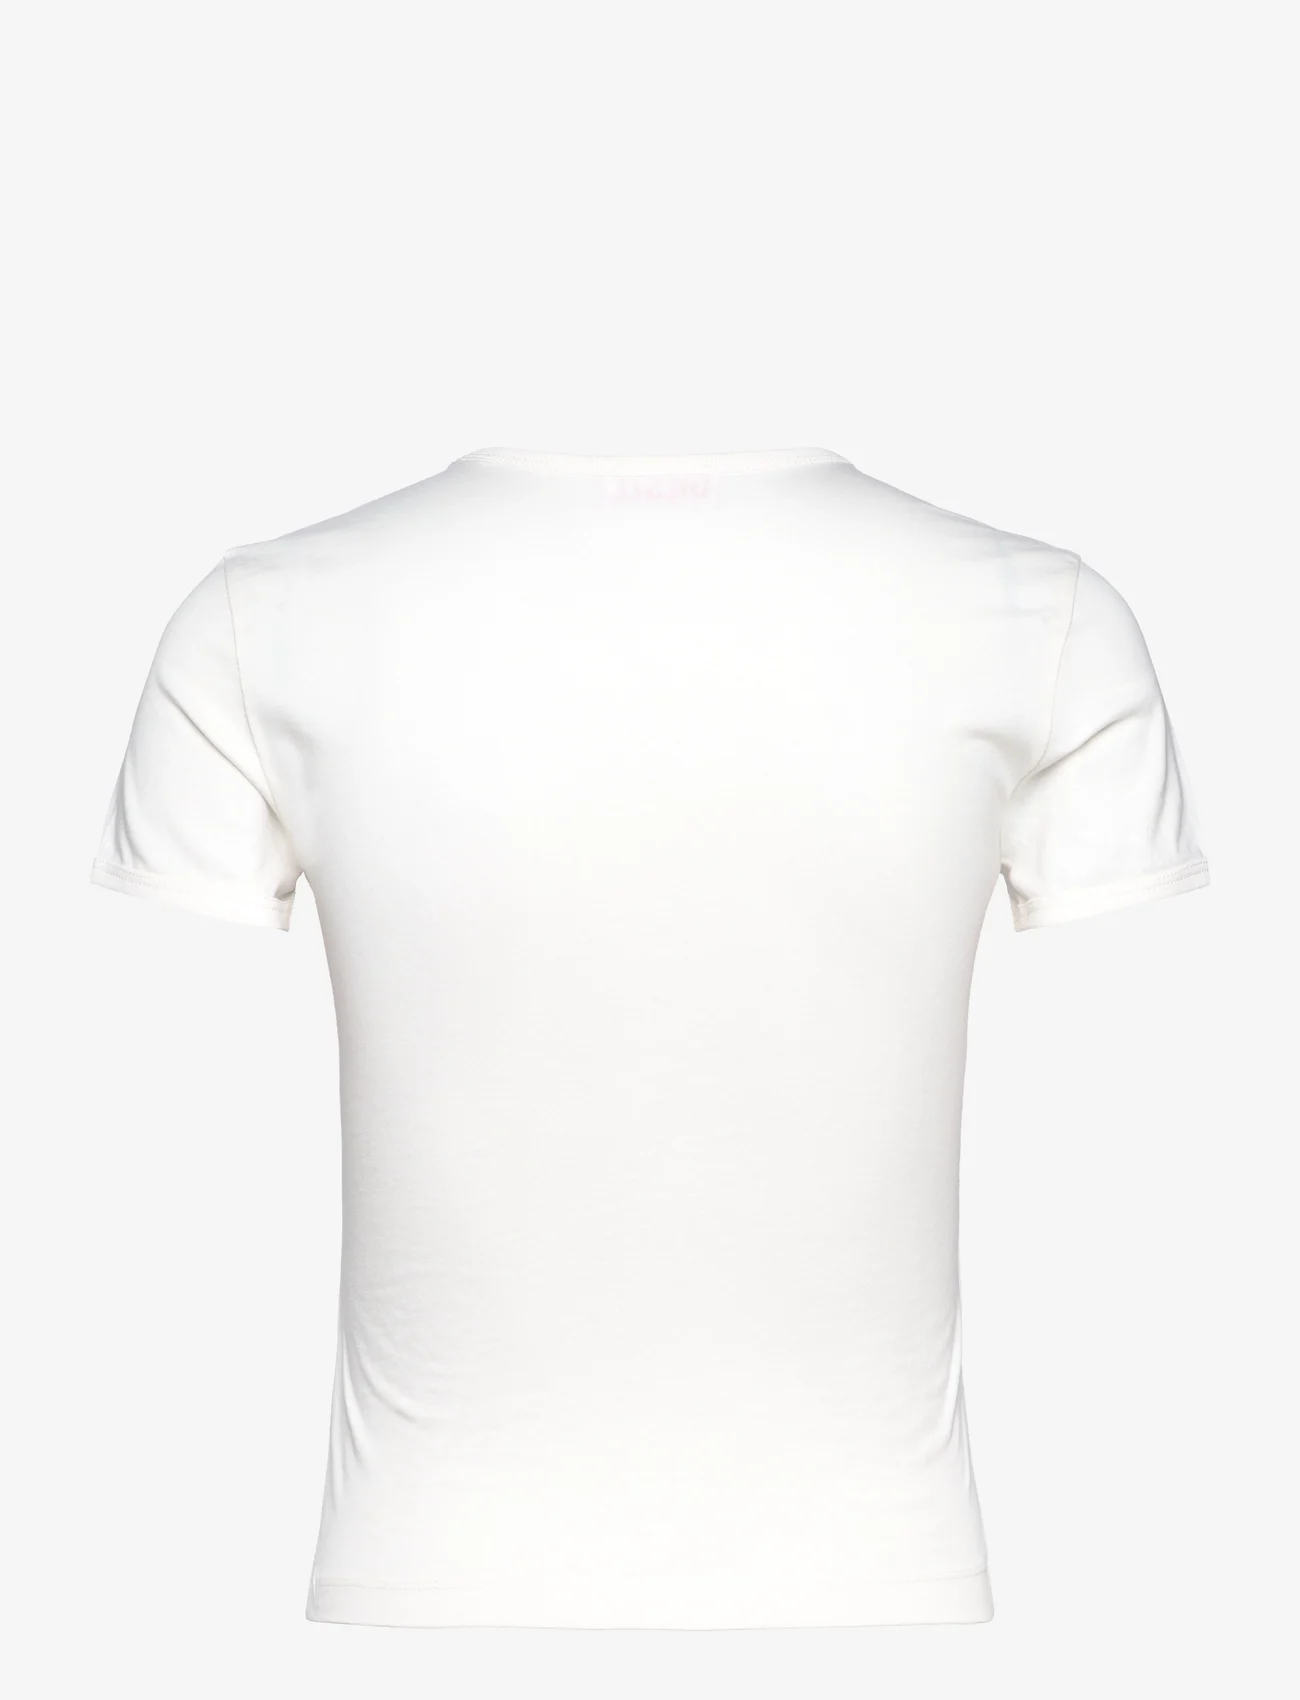 Diesel - T-UNCUTIE-LONG-N7 T-SHIRT - t-skjorter - off white - 1